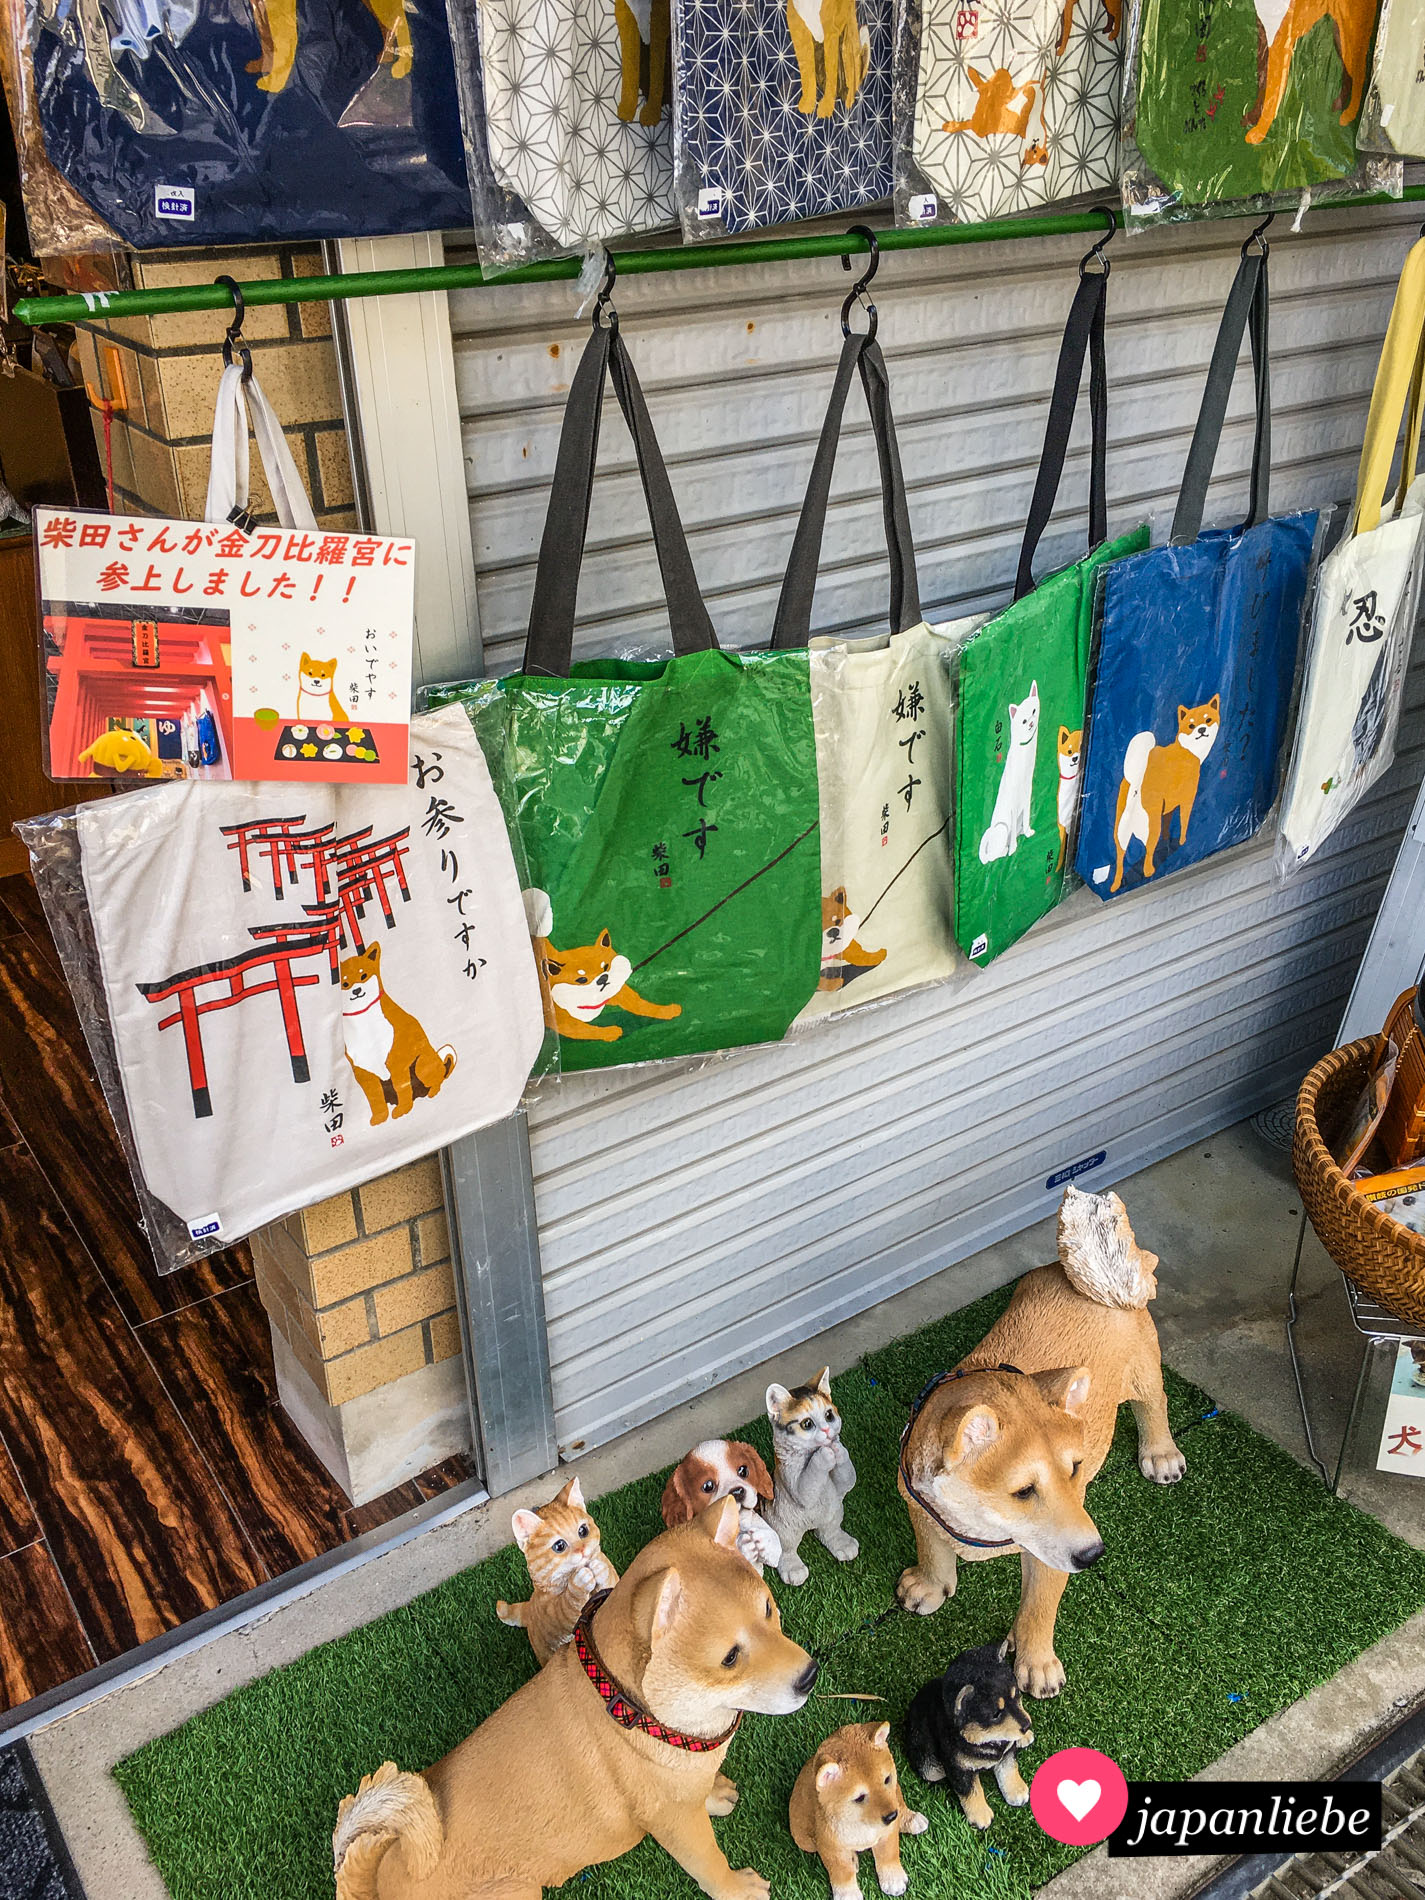 Ein Geschäft verkauft Hunde-Merchandise.